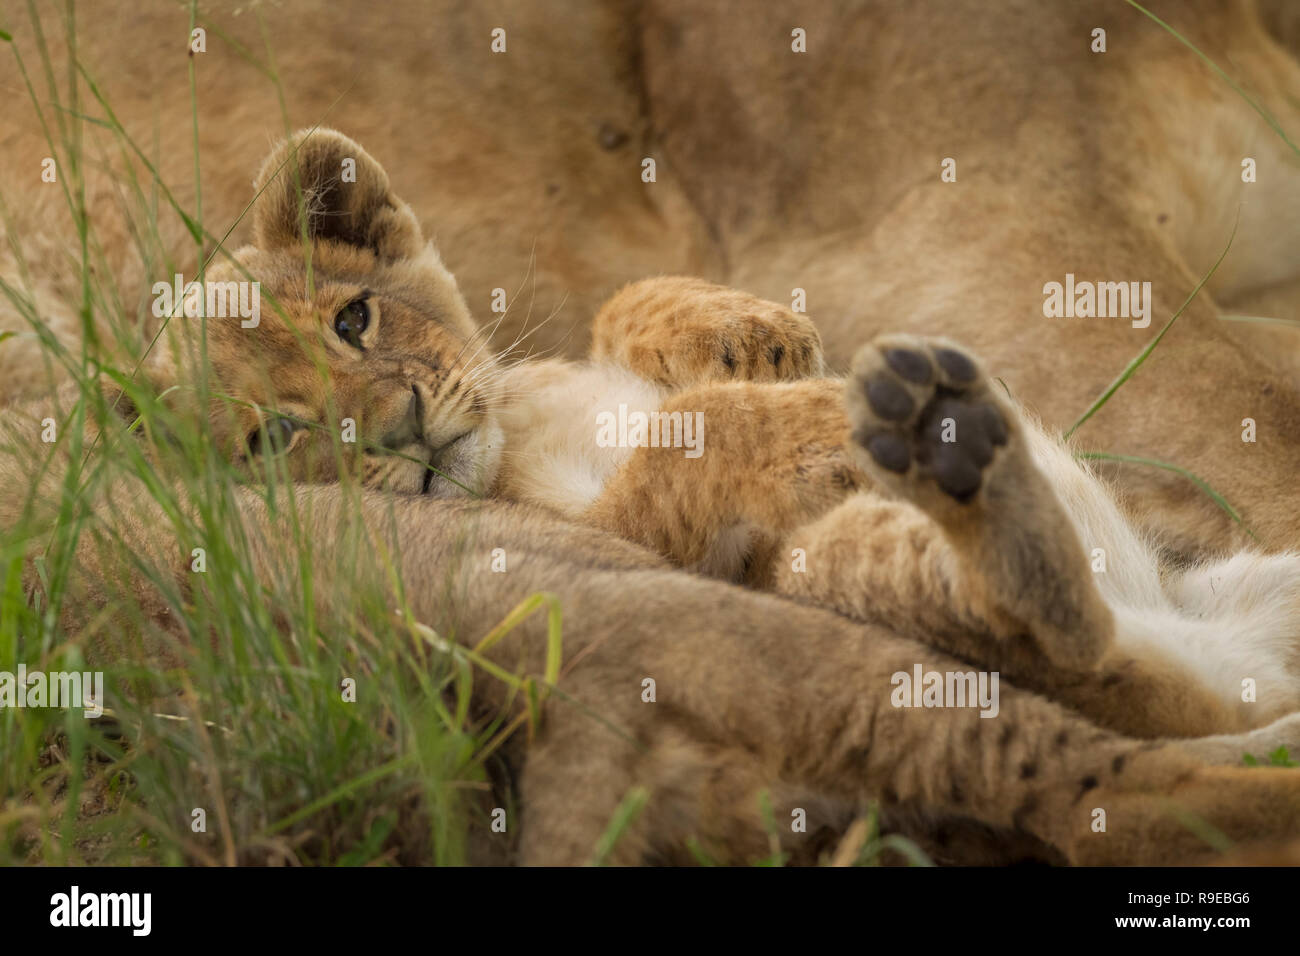 cute cucciolo di leone del bambino che giace fra i leoni sulla sua parte posteriore con zampe in su e guardare la macchina fotografica Foto Stock